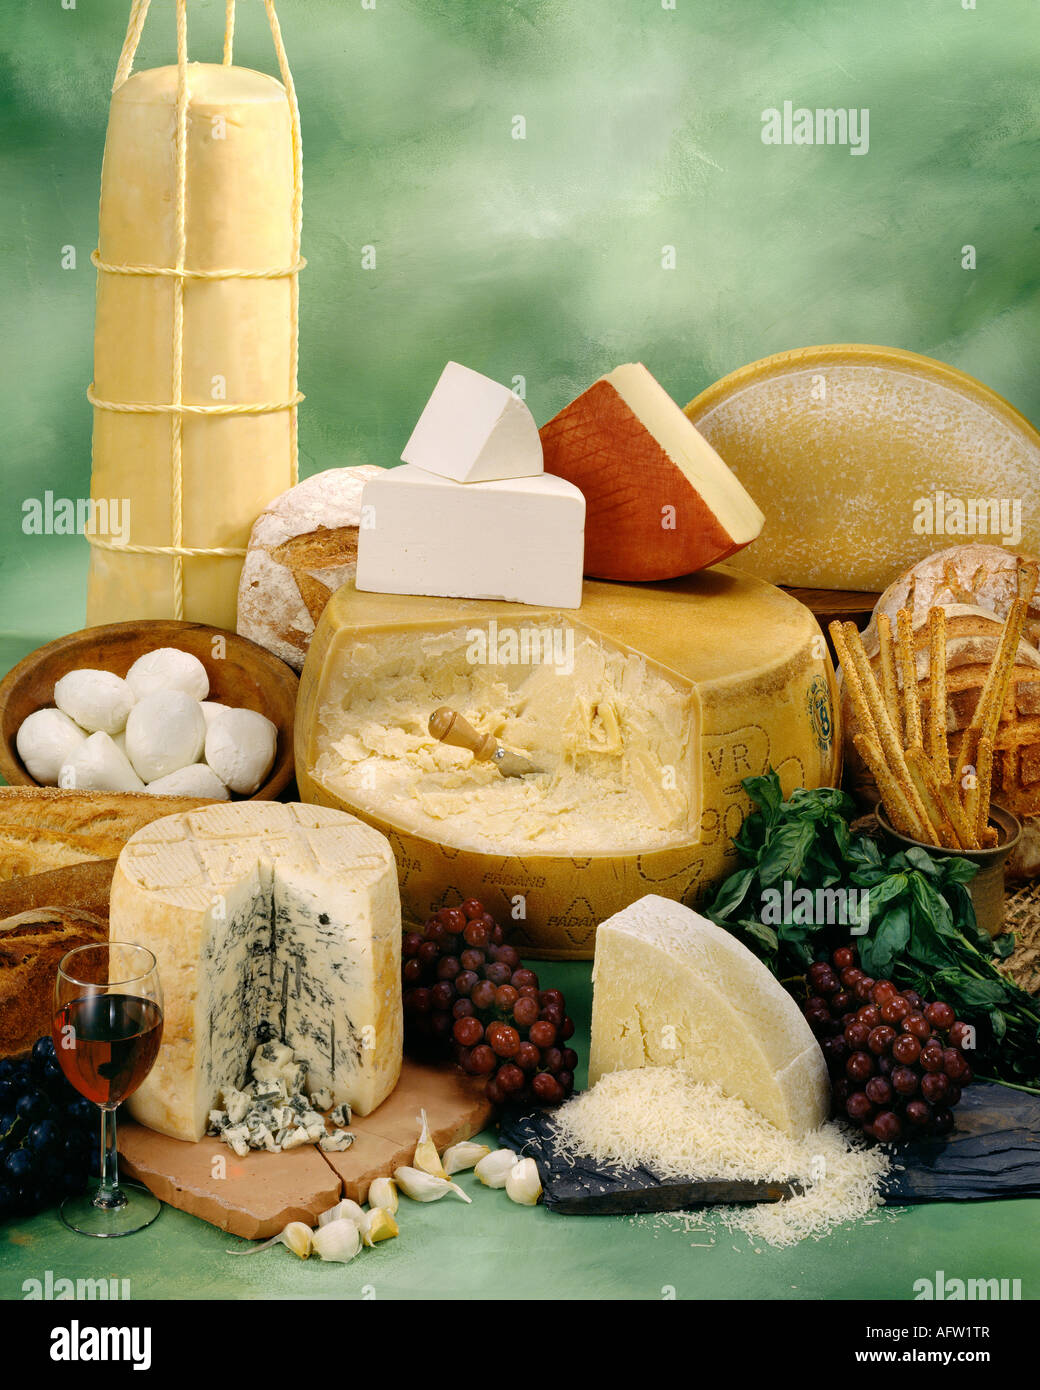 Italienische Käsesorten in Gruppe Farbfoto auf grün getönten gesprenkelte Hintergrund. Hochformat, Studio Tischplatte. Klassisches Bild. Stockfoto